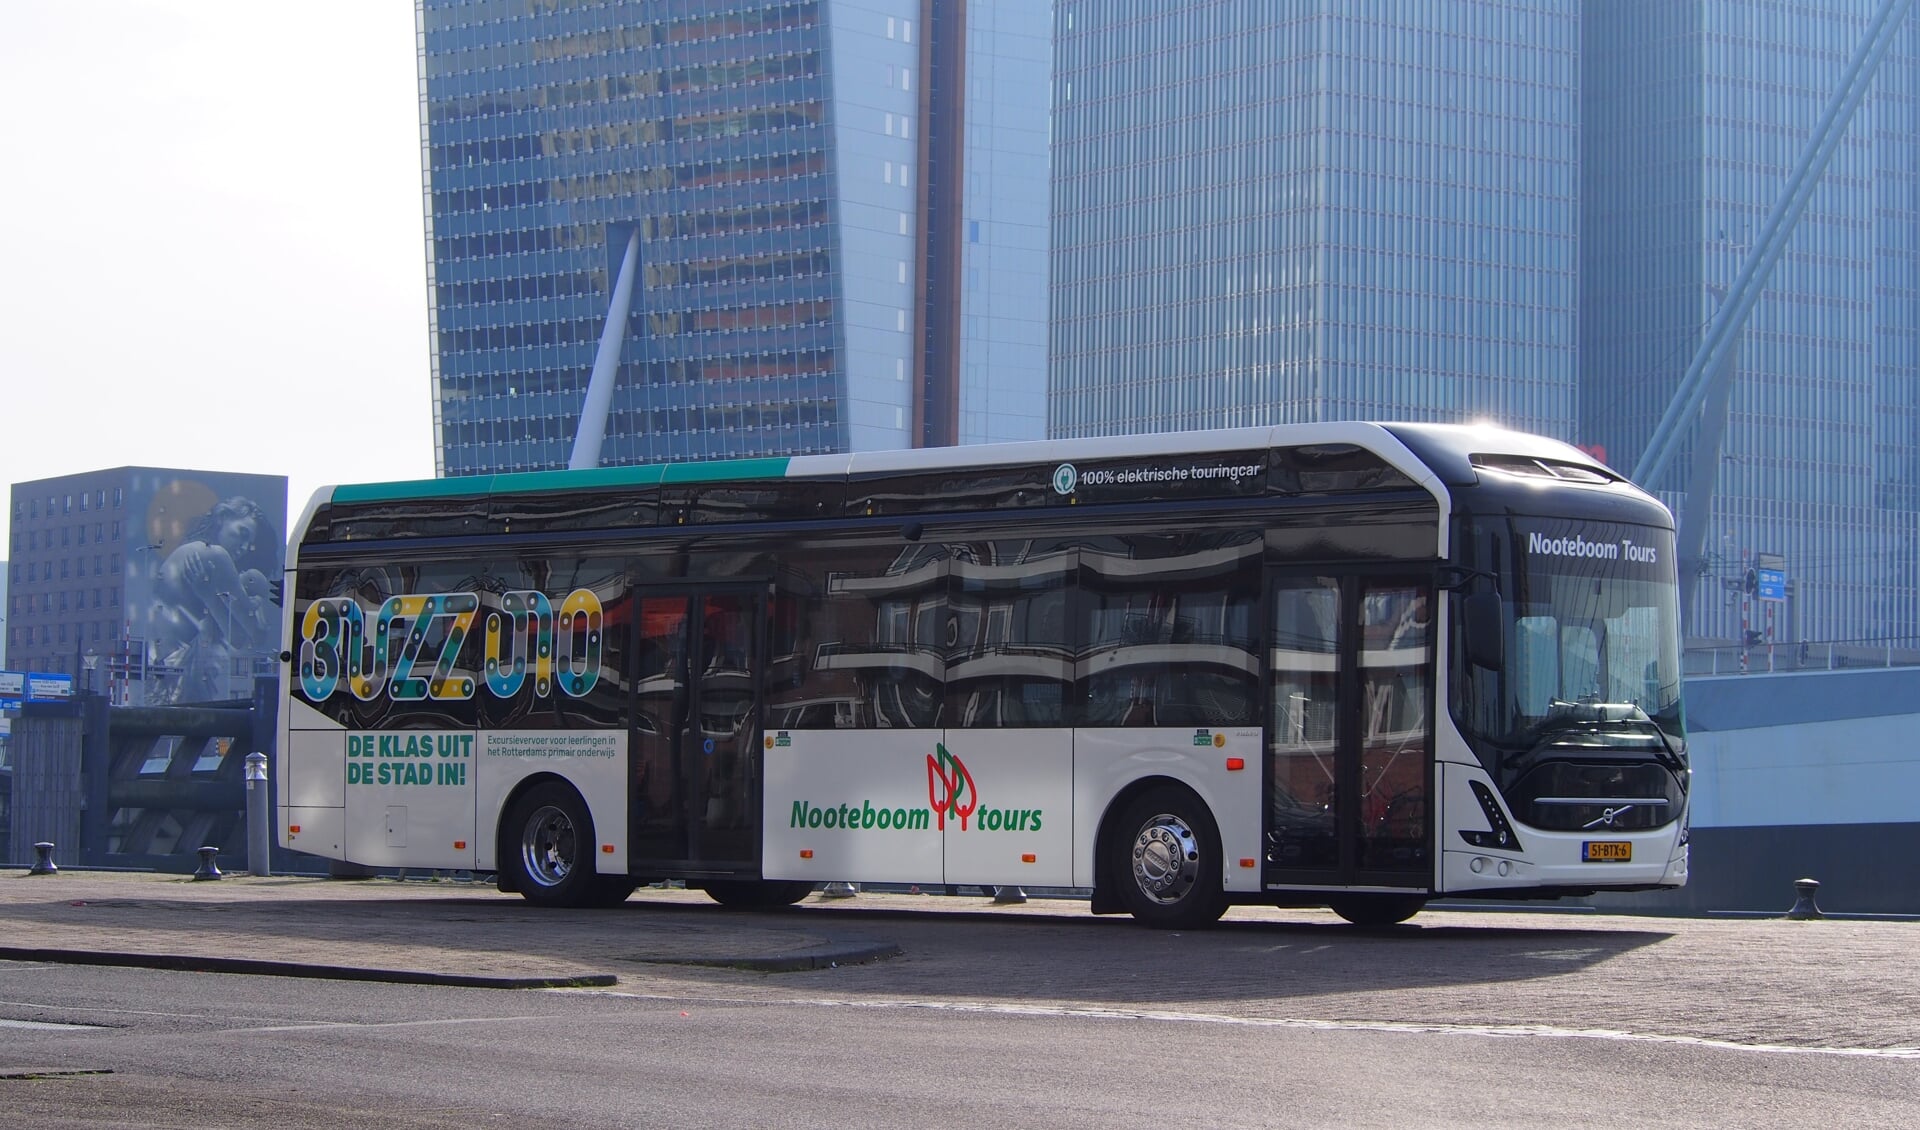 De bus wordt met name ingezet voor het sociaal-maatschappelijke project Buzz010 in Rotterdam. 